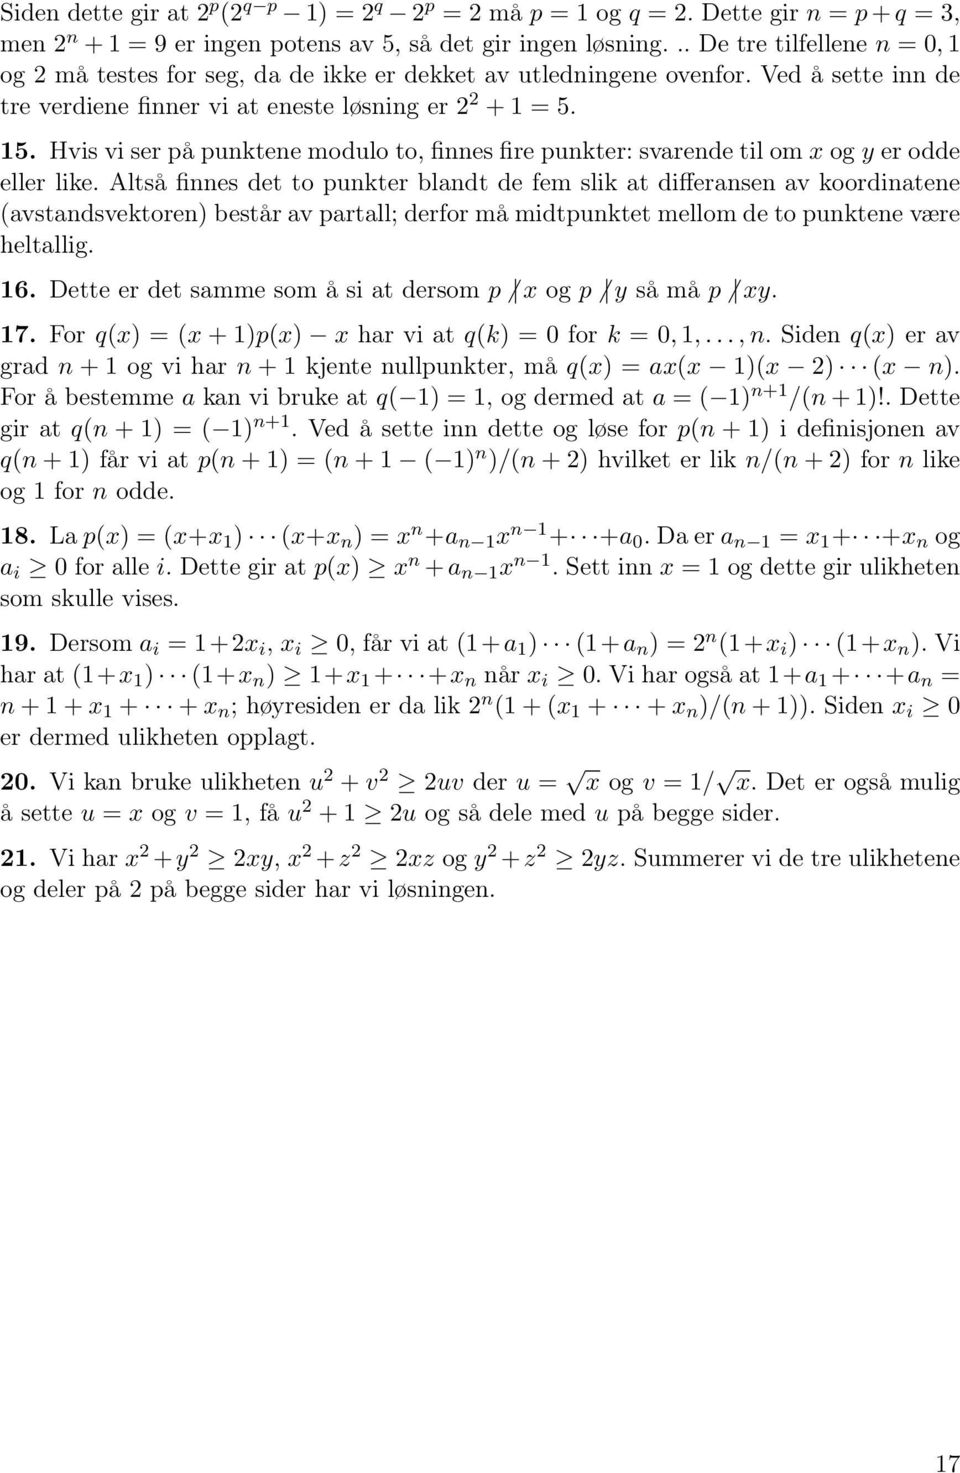 Hvis vi ser på punktene modulo to, finnes fire punkter: svarende til om x og y er odde eller like.